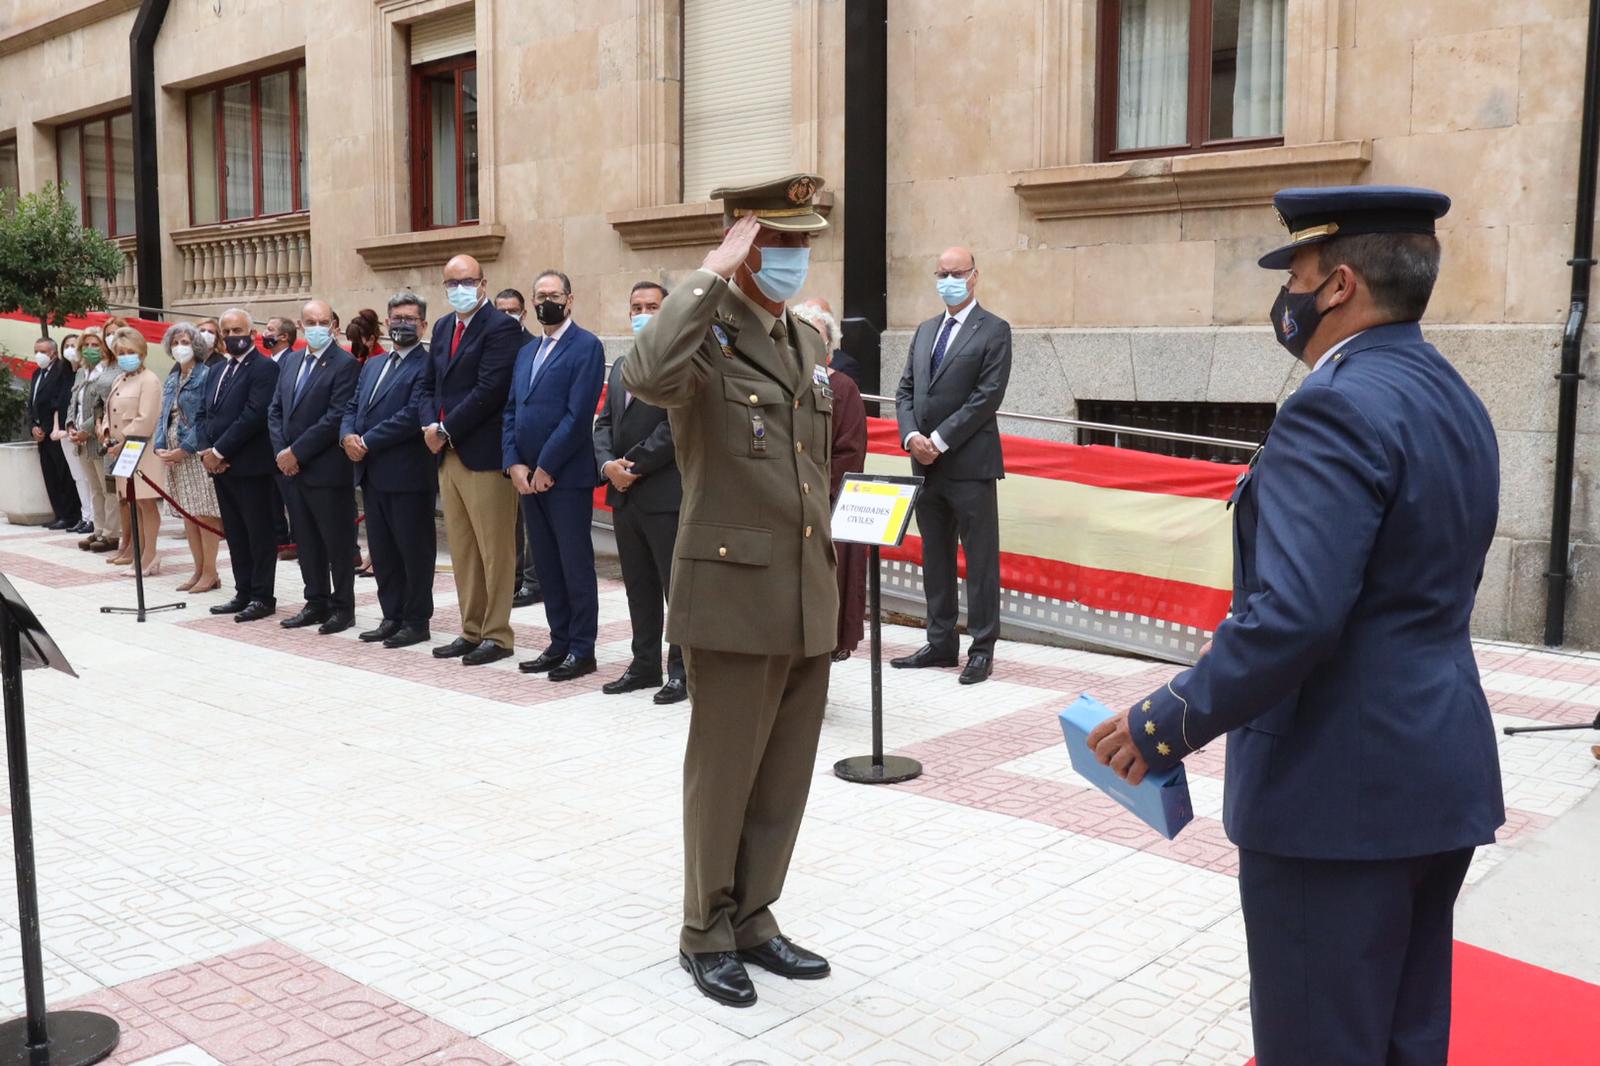 Día de la Subdelegación de Defensa en Salamanca 2021 (2)